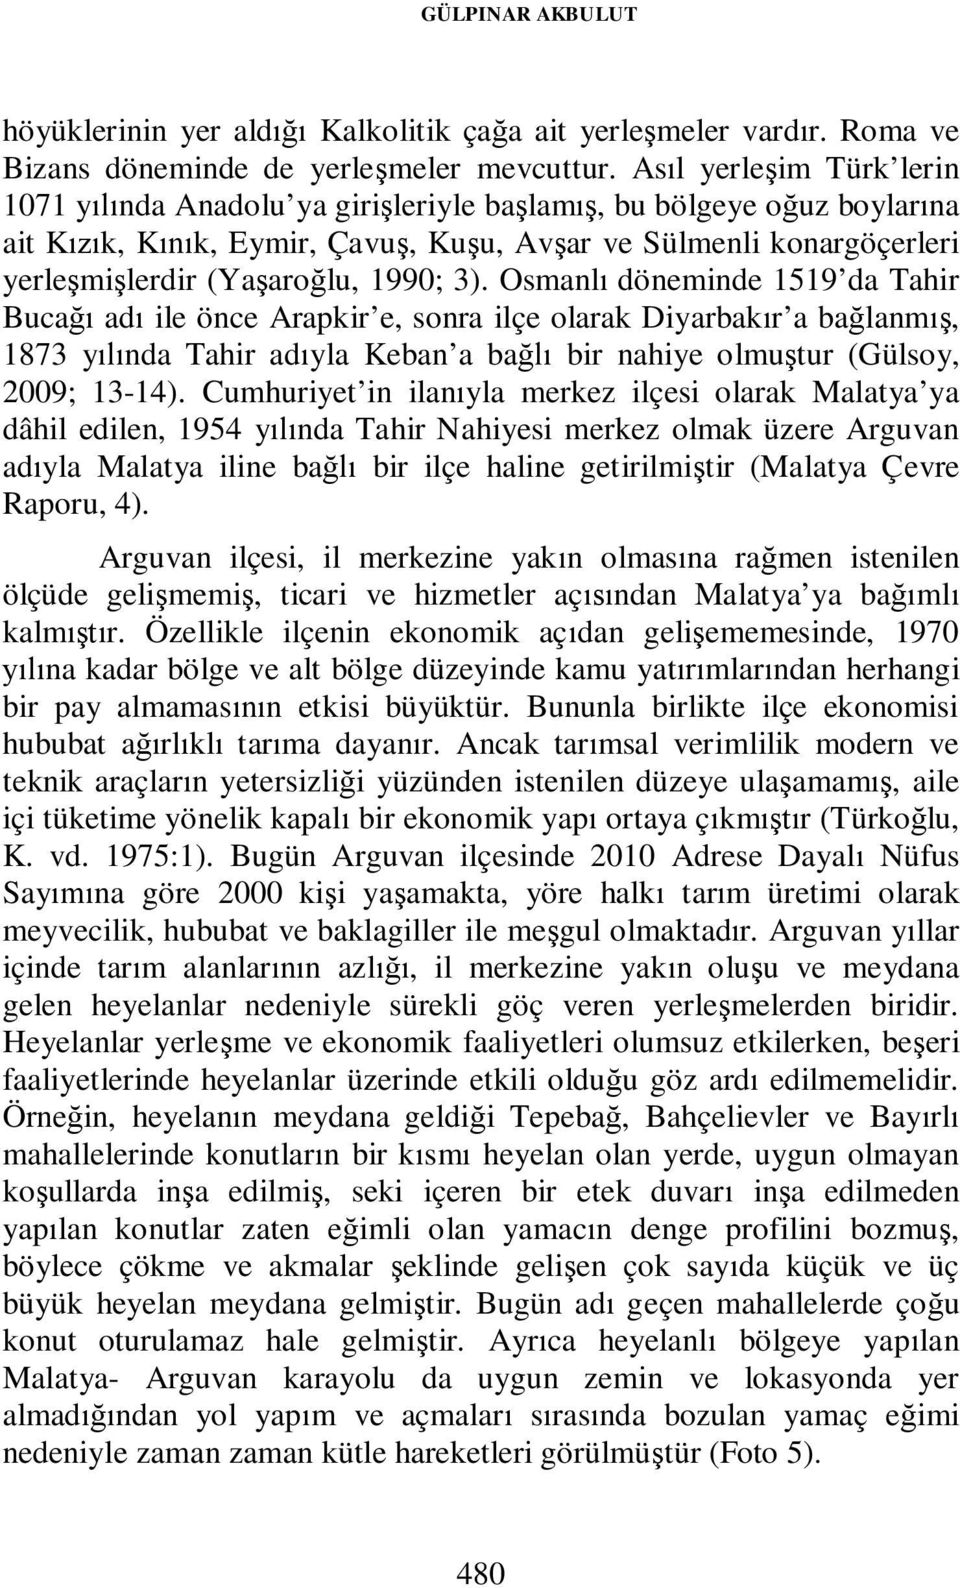 1990; 3). Osmanlı döneminde 1519 da Tahir Bucağı adı ile önce Arapkir e, sonra ilçe olarak Diyarbakır a bağlanmış, 1873 yılında Tahir adıyla Keban a bağlı bir nahiye olmuştur (Gülsoy, 2009; 13-14).